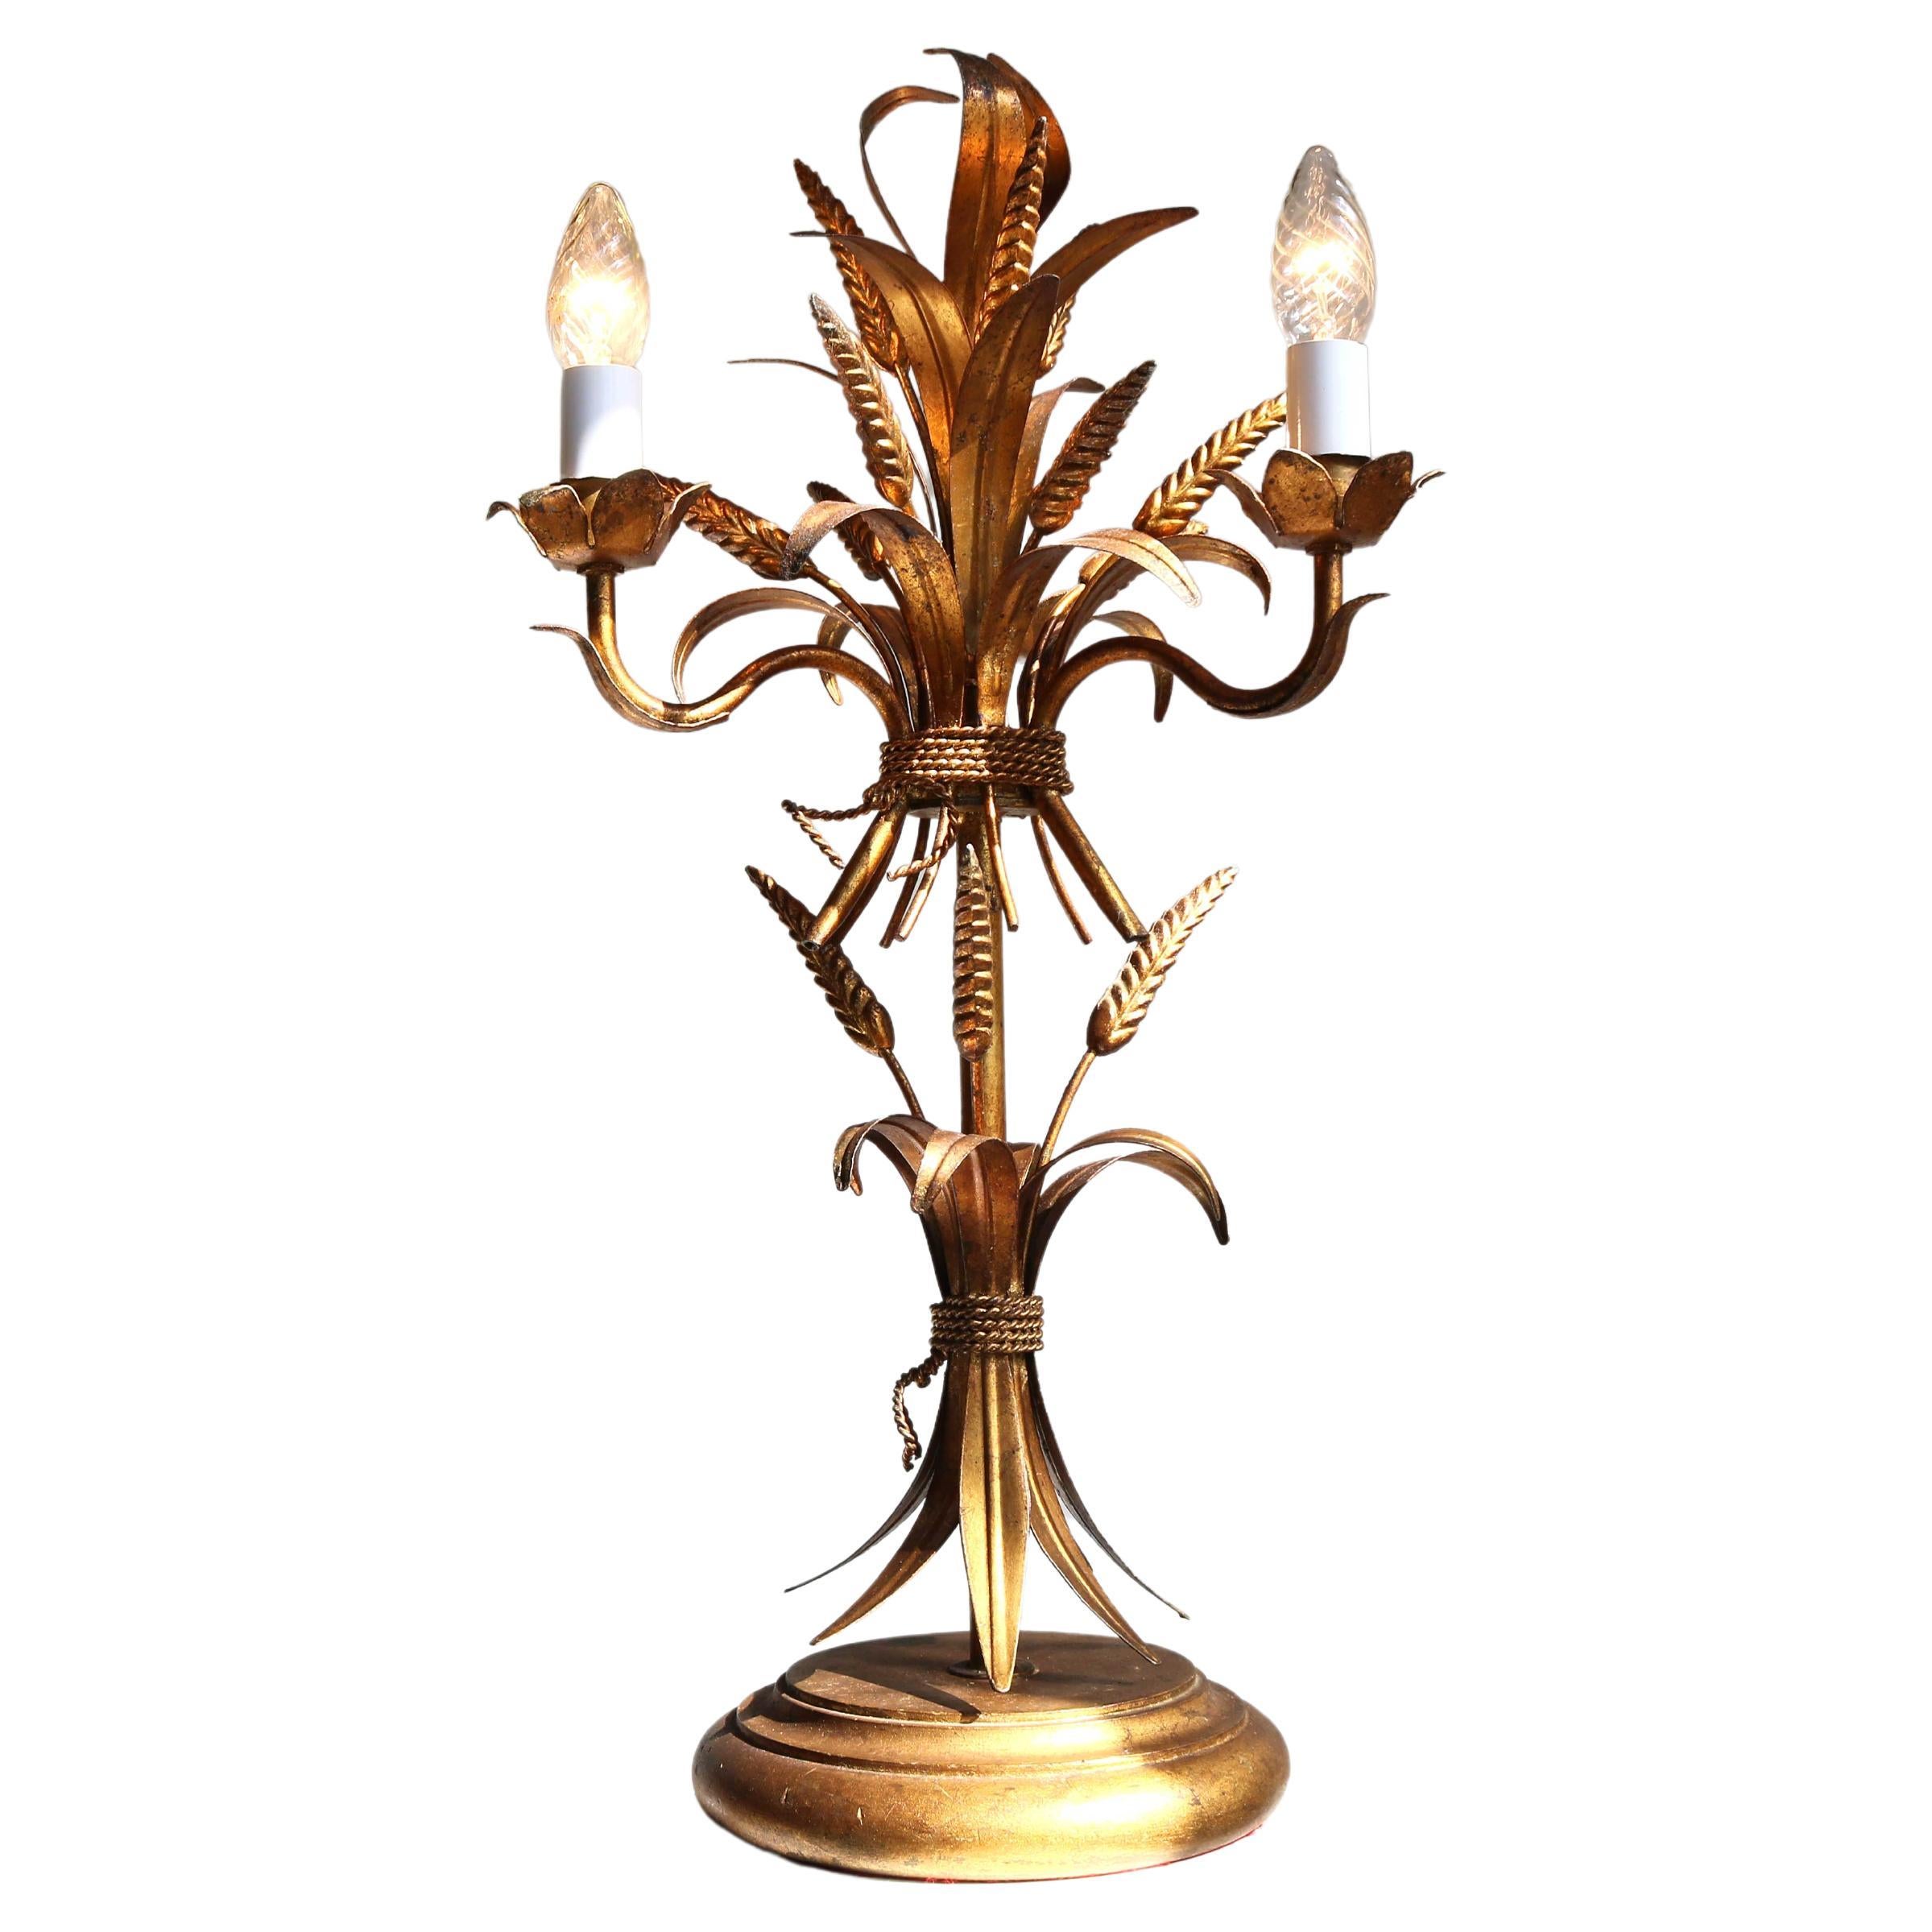 Lampe de bureau en forme de gerbe de blé dorée, lampe de table florentine par Hans Kgl, années 1960